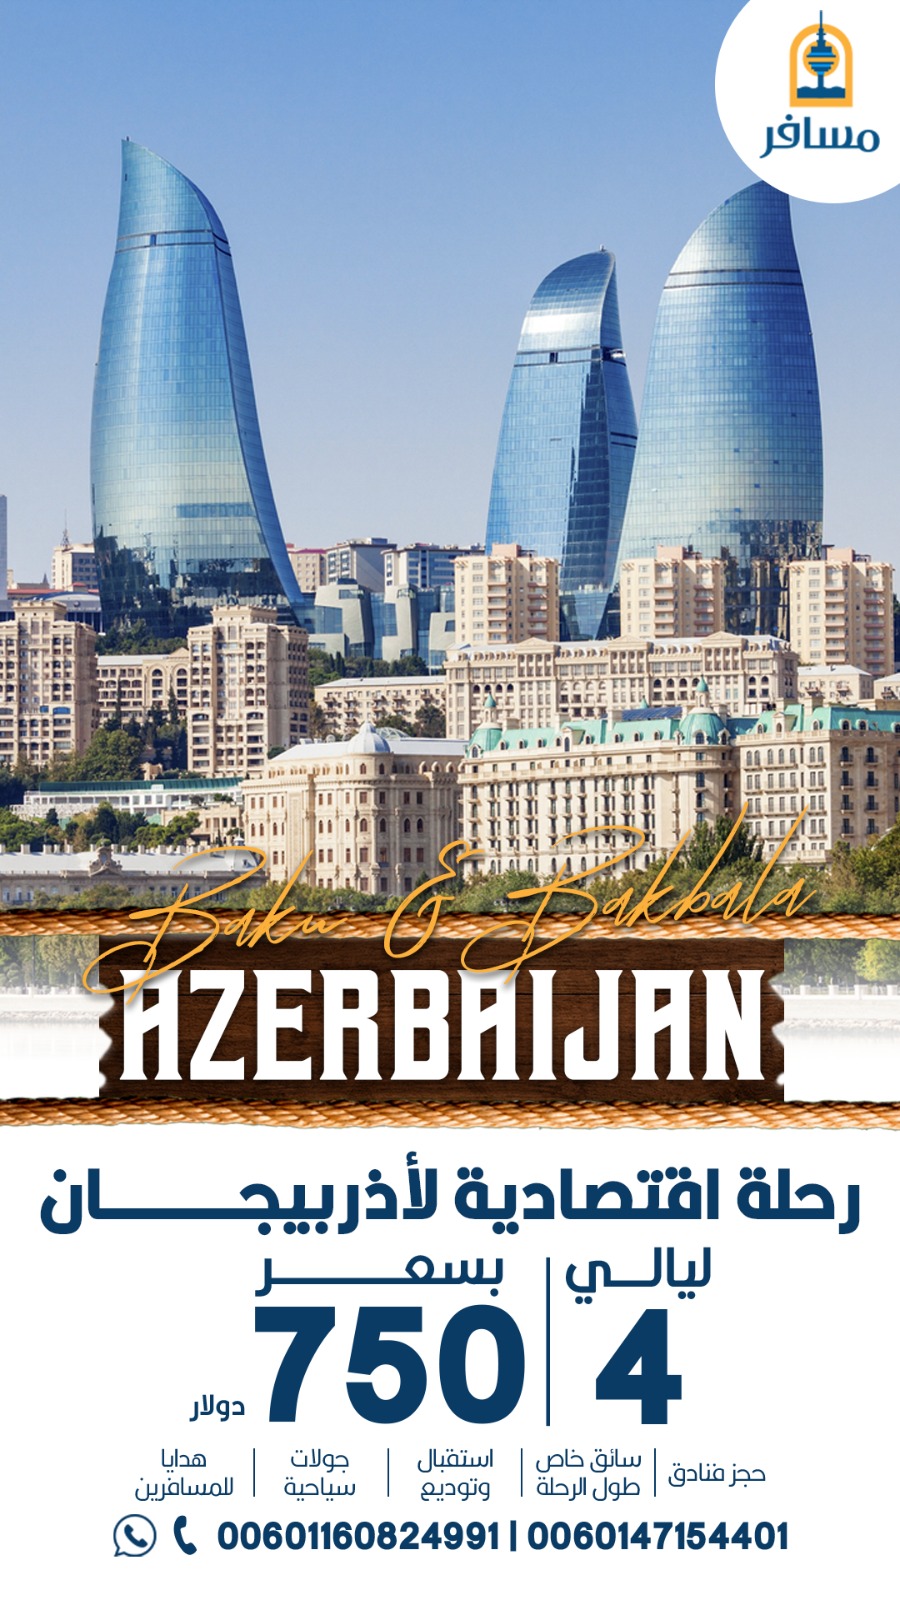 رحله الي اذربيجان مع مسافر